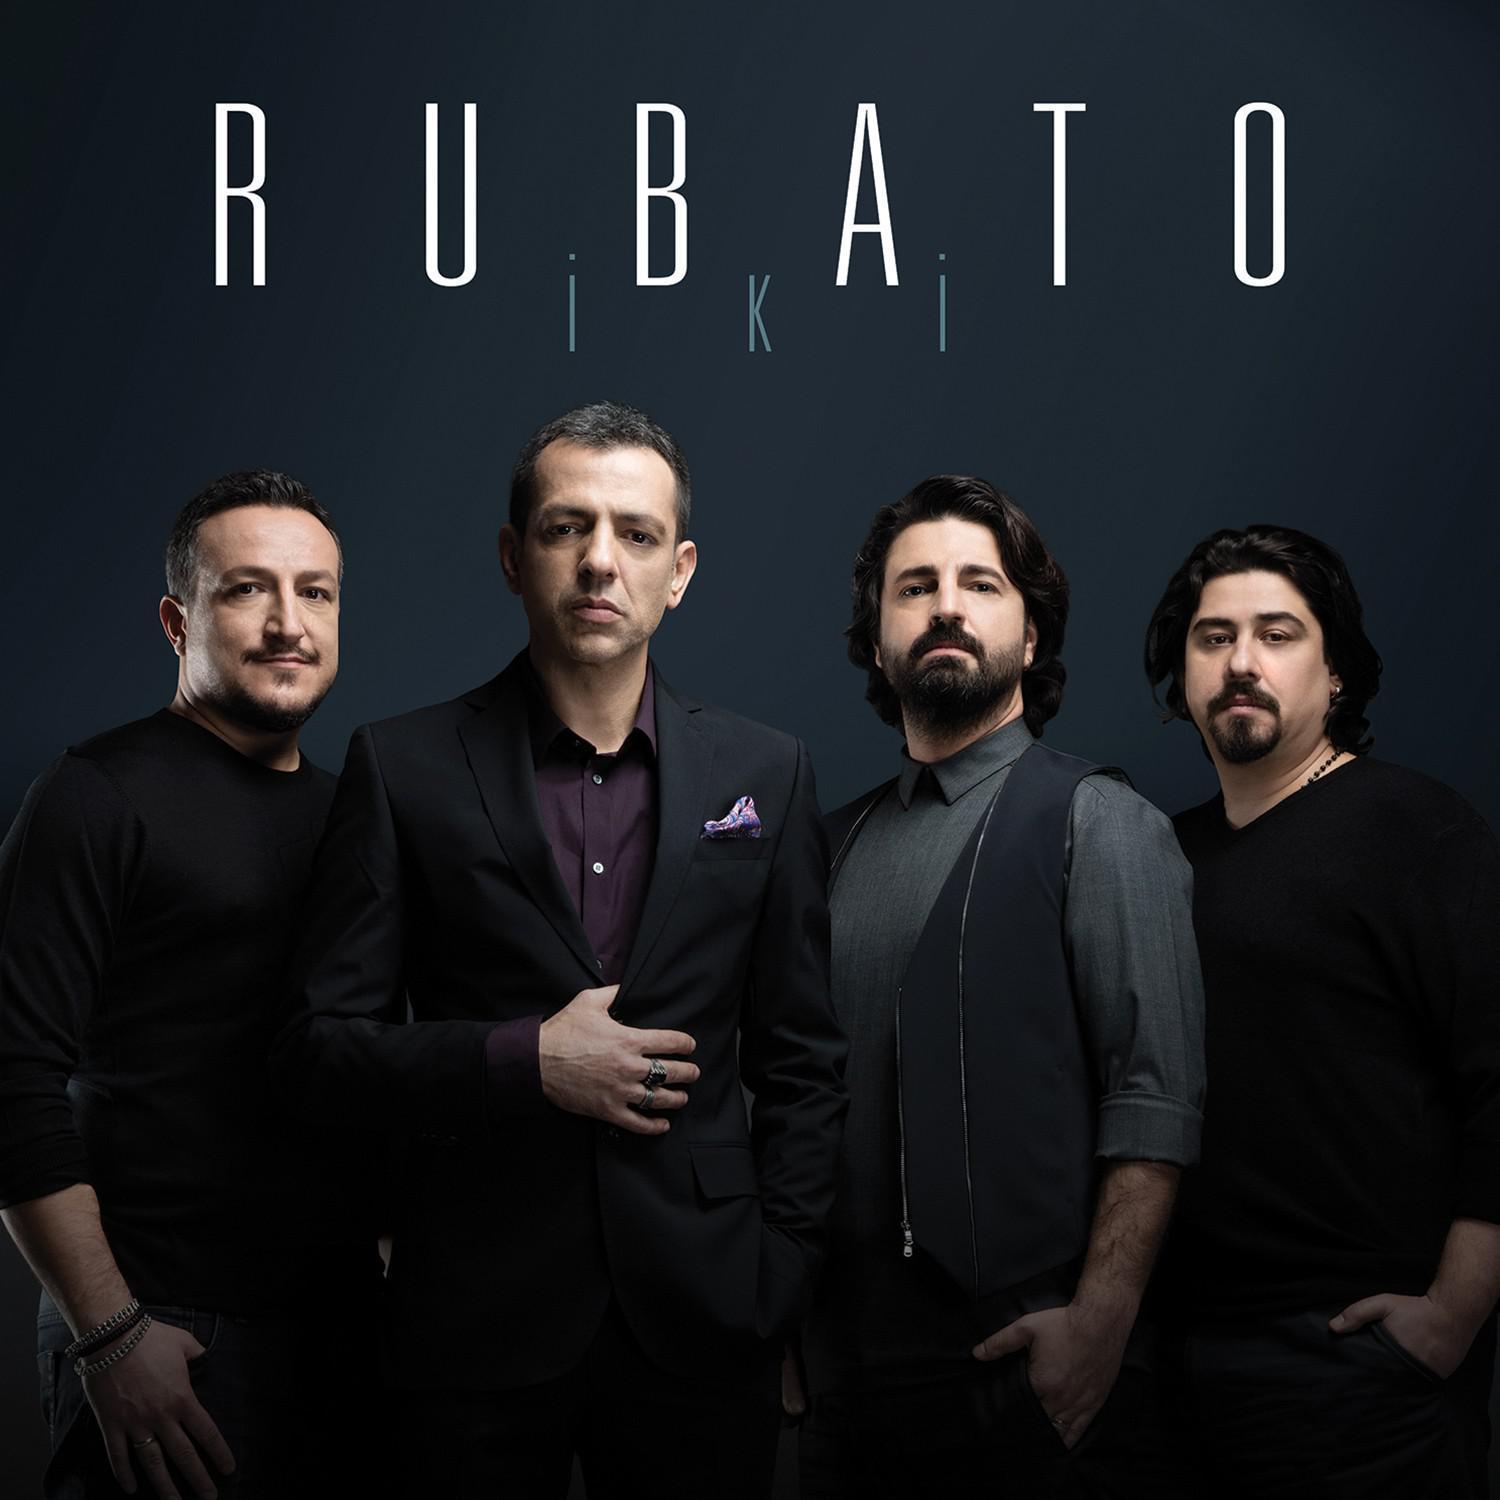 Rubato grubu üyeleri kimler Rubato ne demek İşte Rubato grubunun şarkıları